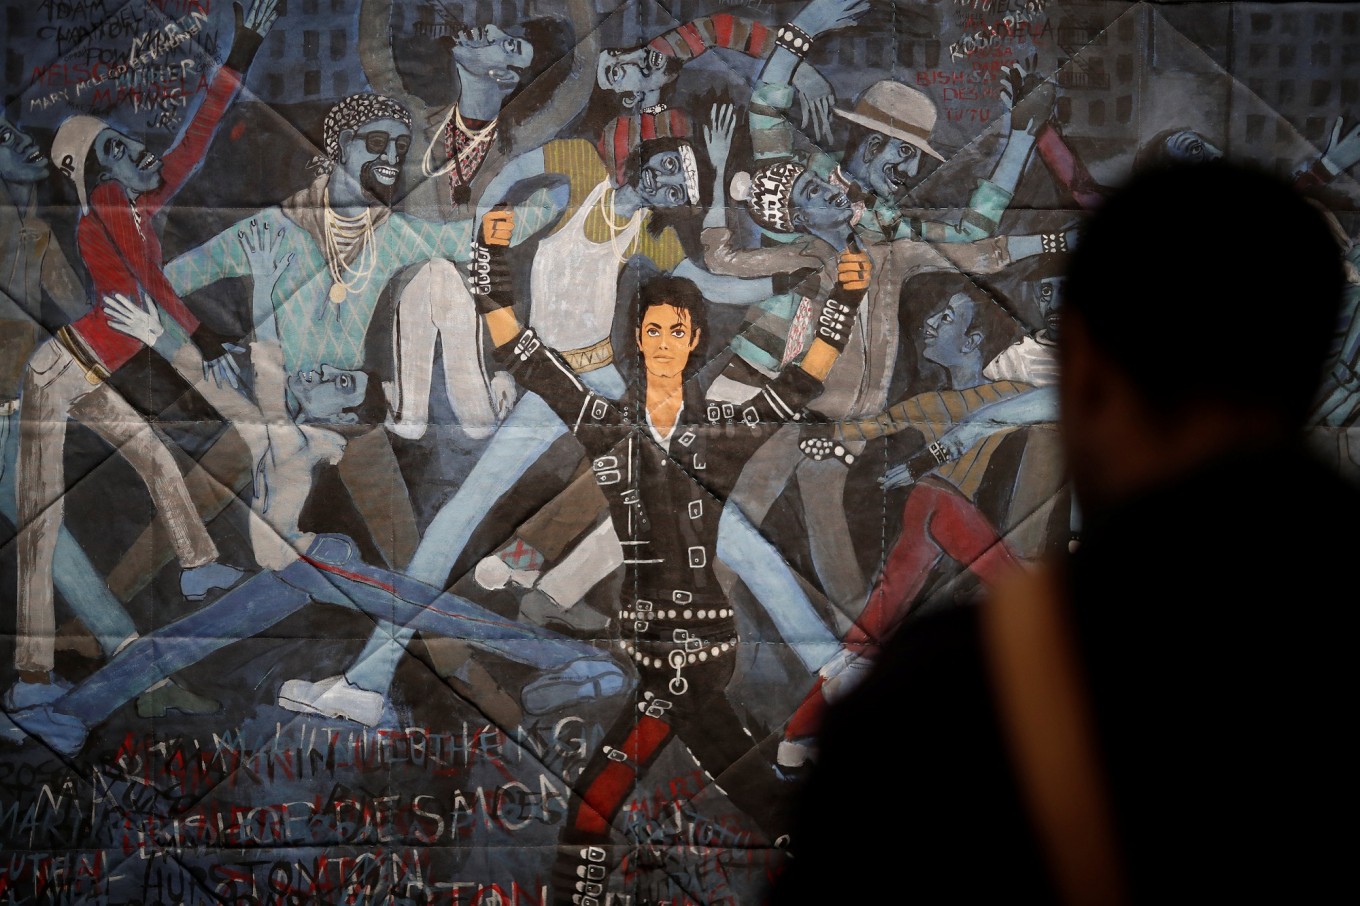 Michael Jackson fans look to beat it down to Paris art show